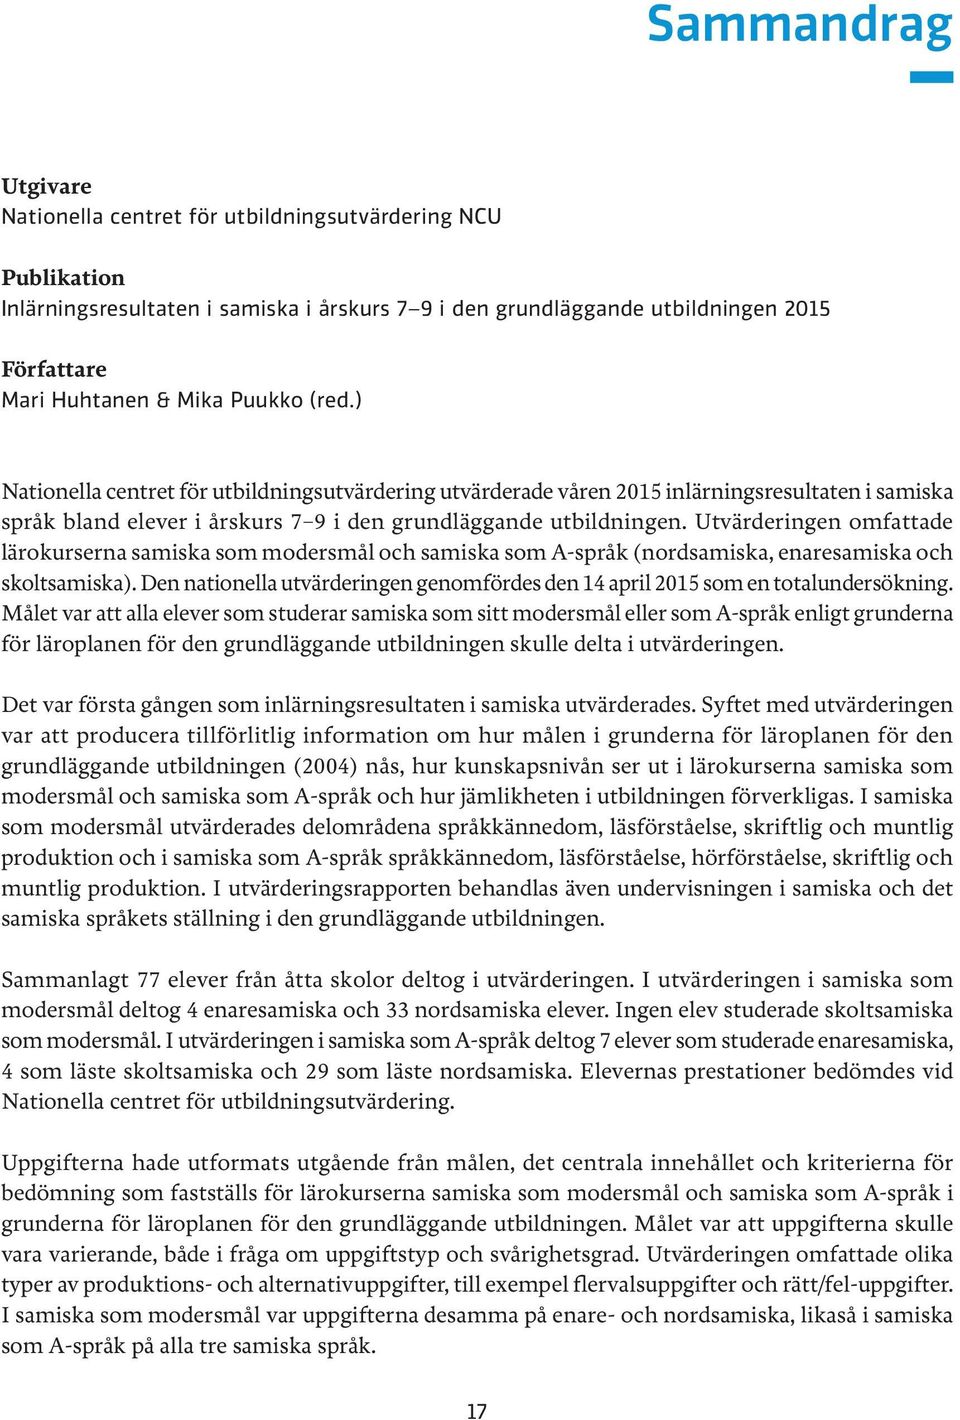 Utvärderingen omfattade lärokurserna samiska som modersmål och samiska som A-språk (nordsamiska, enaresamiska och skoltsamiska).